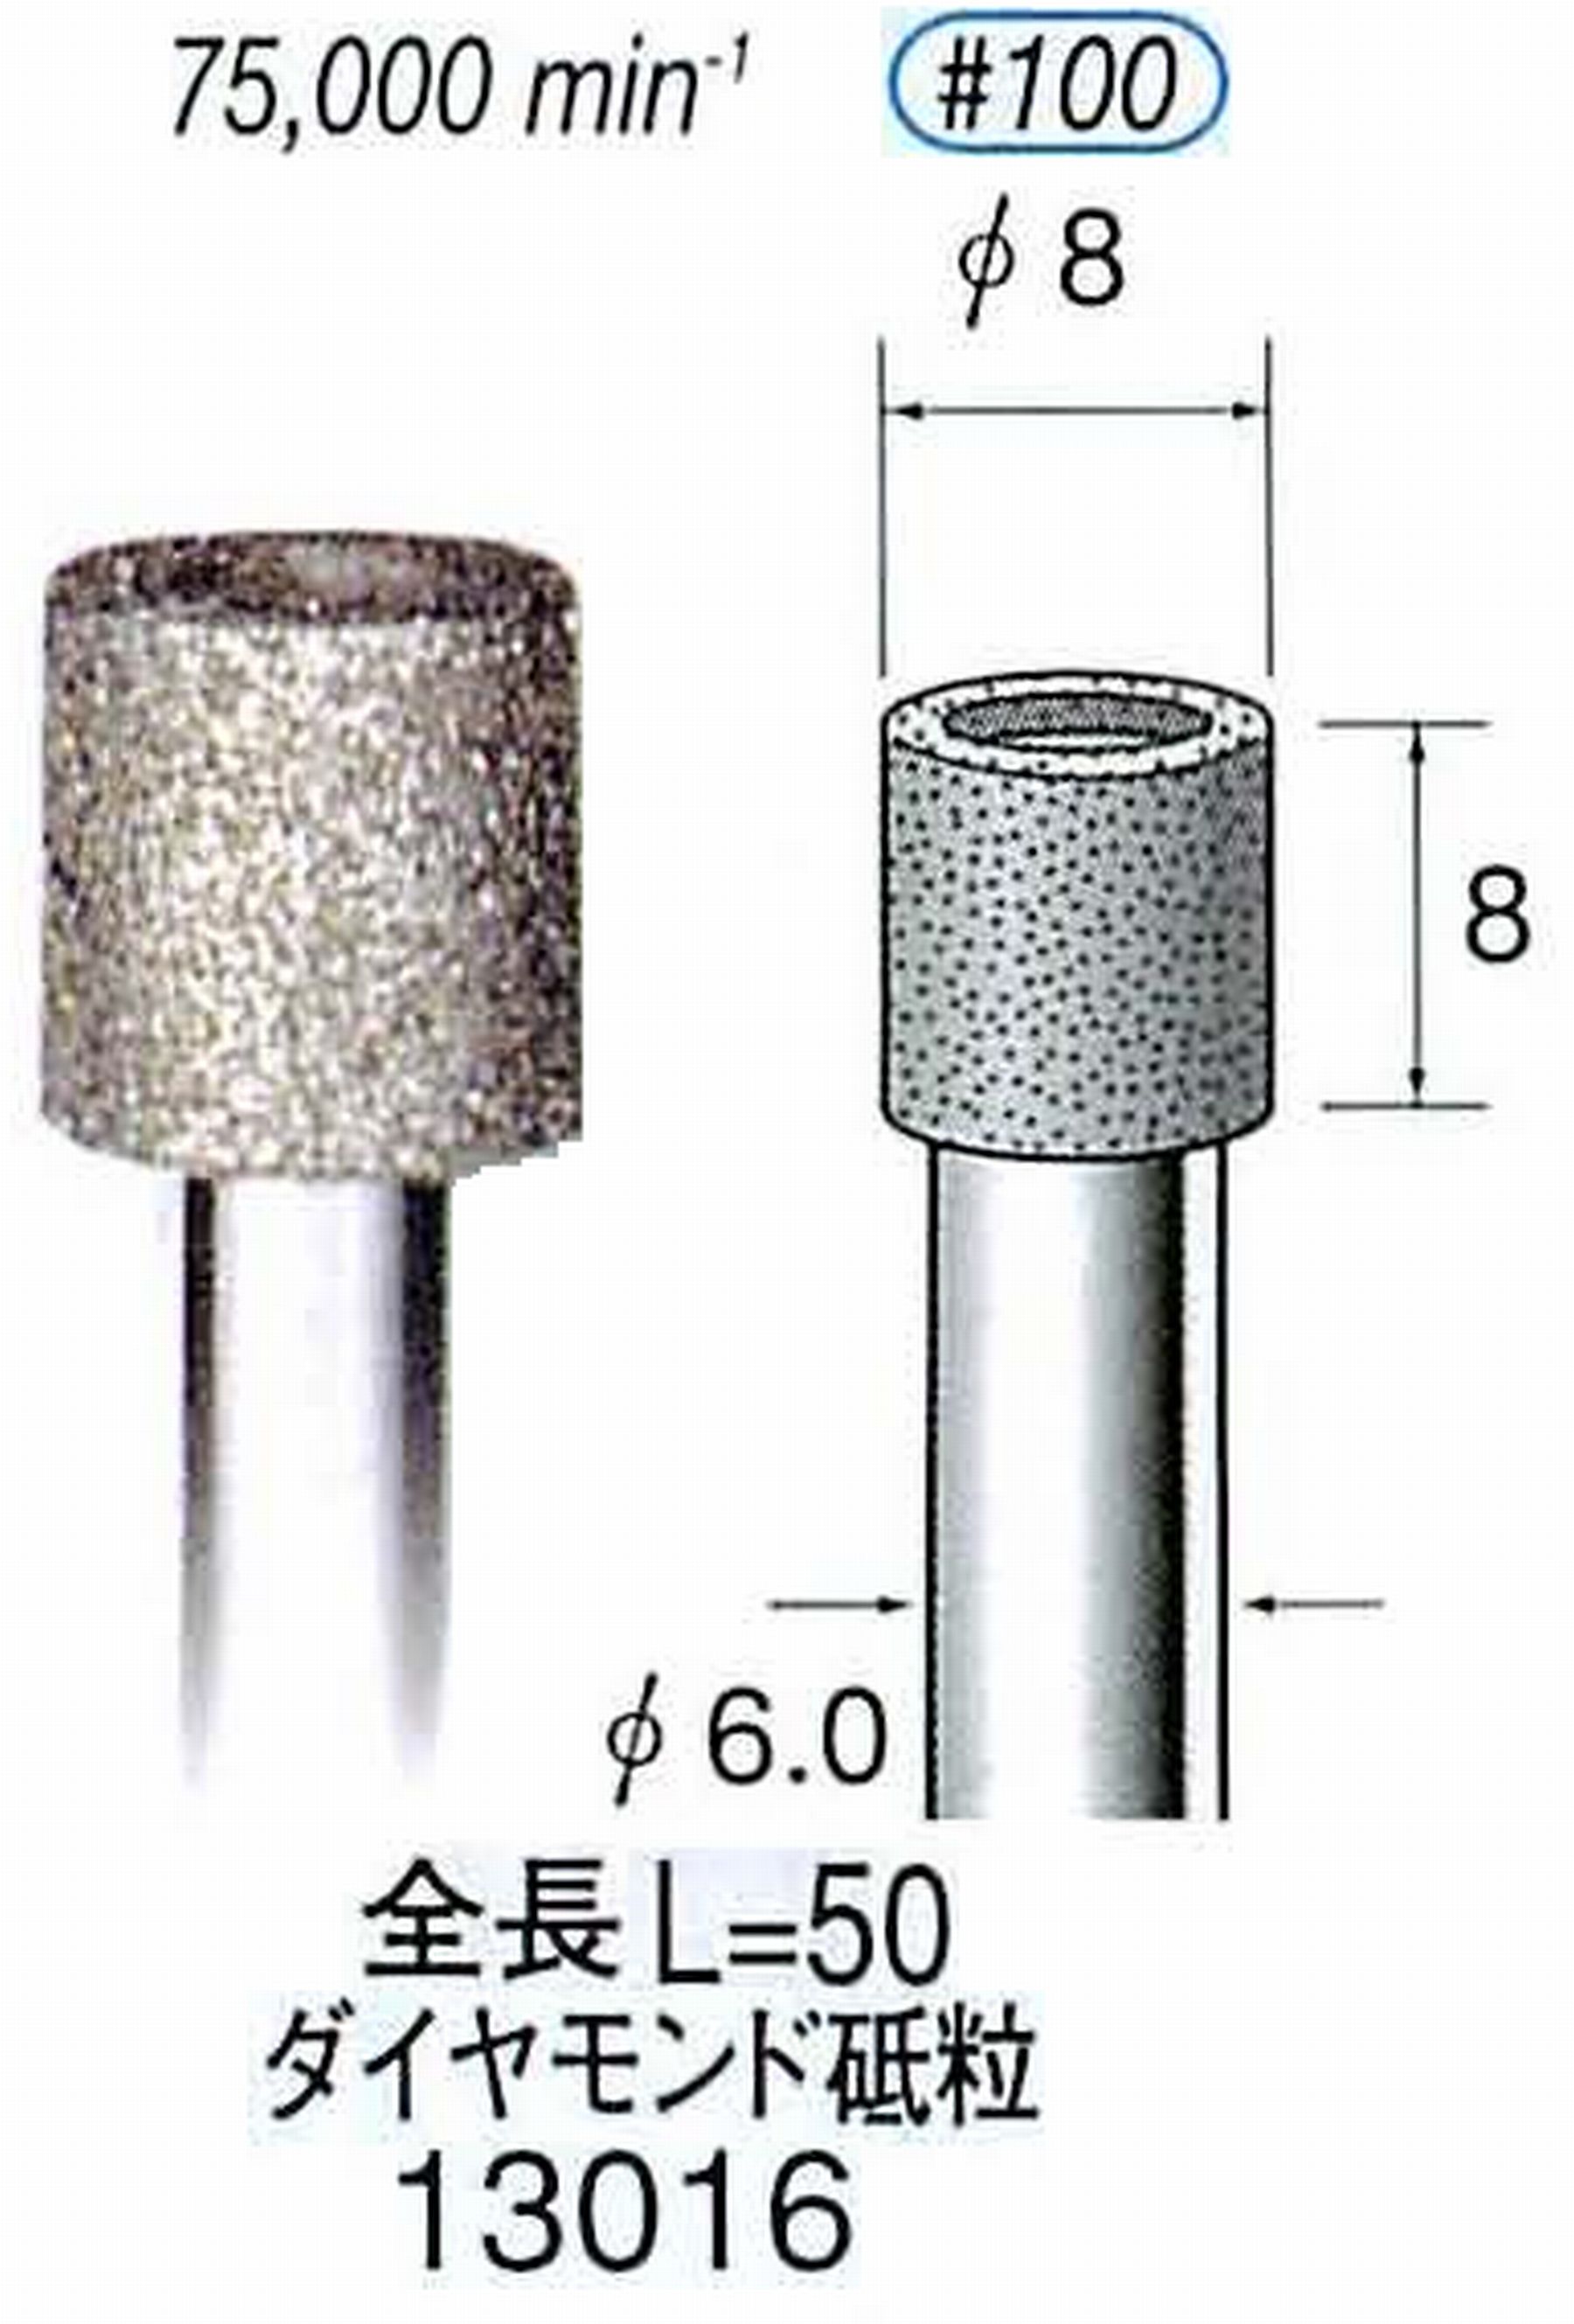 ナカニシ/NAKANISHI 電着ダイヤモンド ダイヤモンド砥粒 軸径(シャンク)φ6.0mm 13016